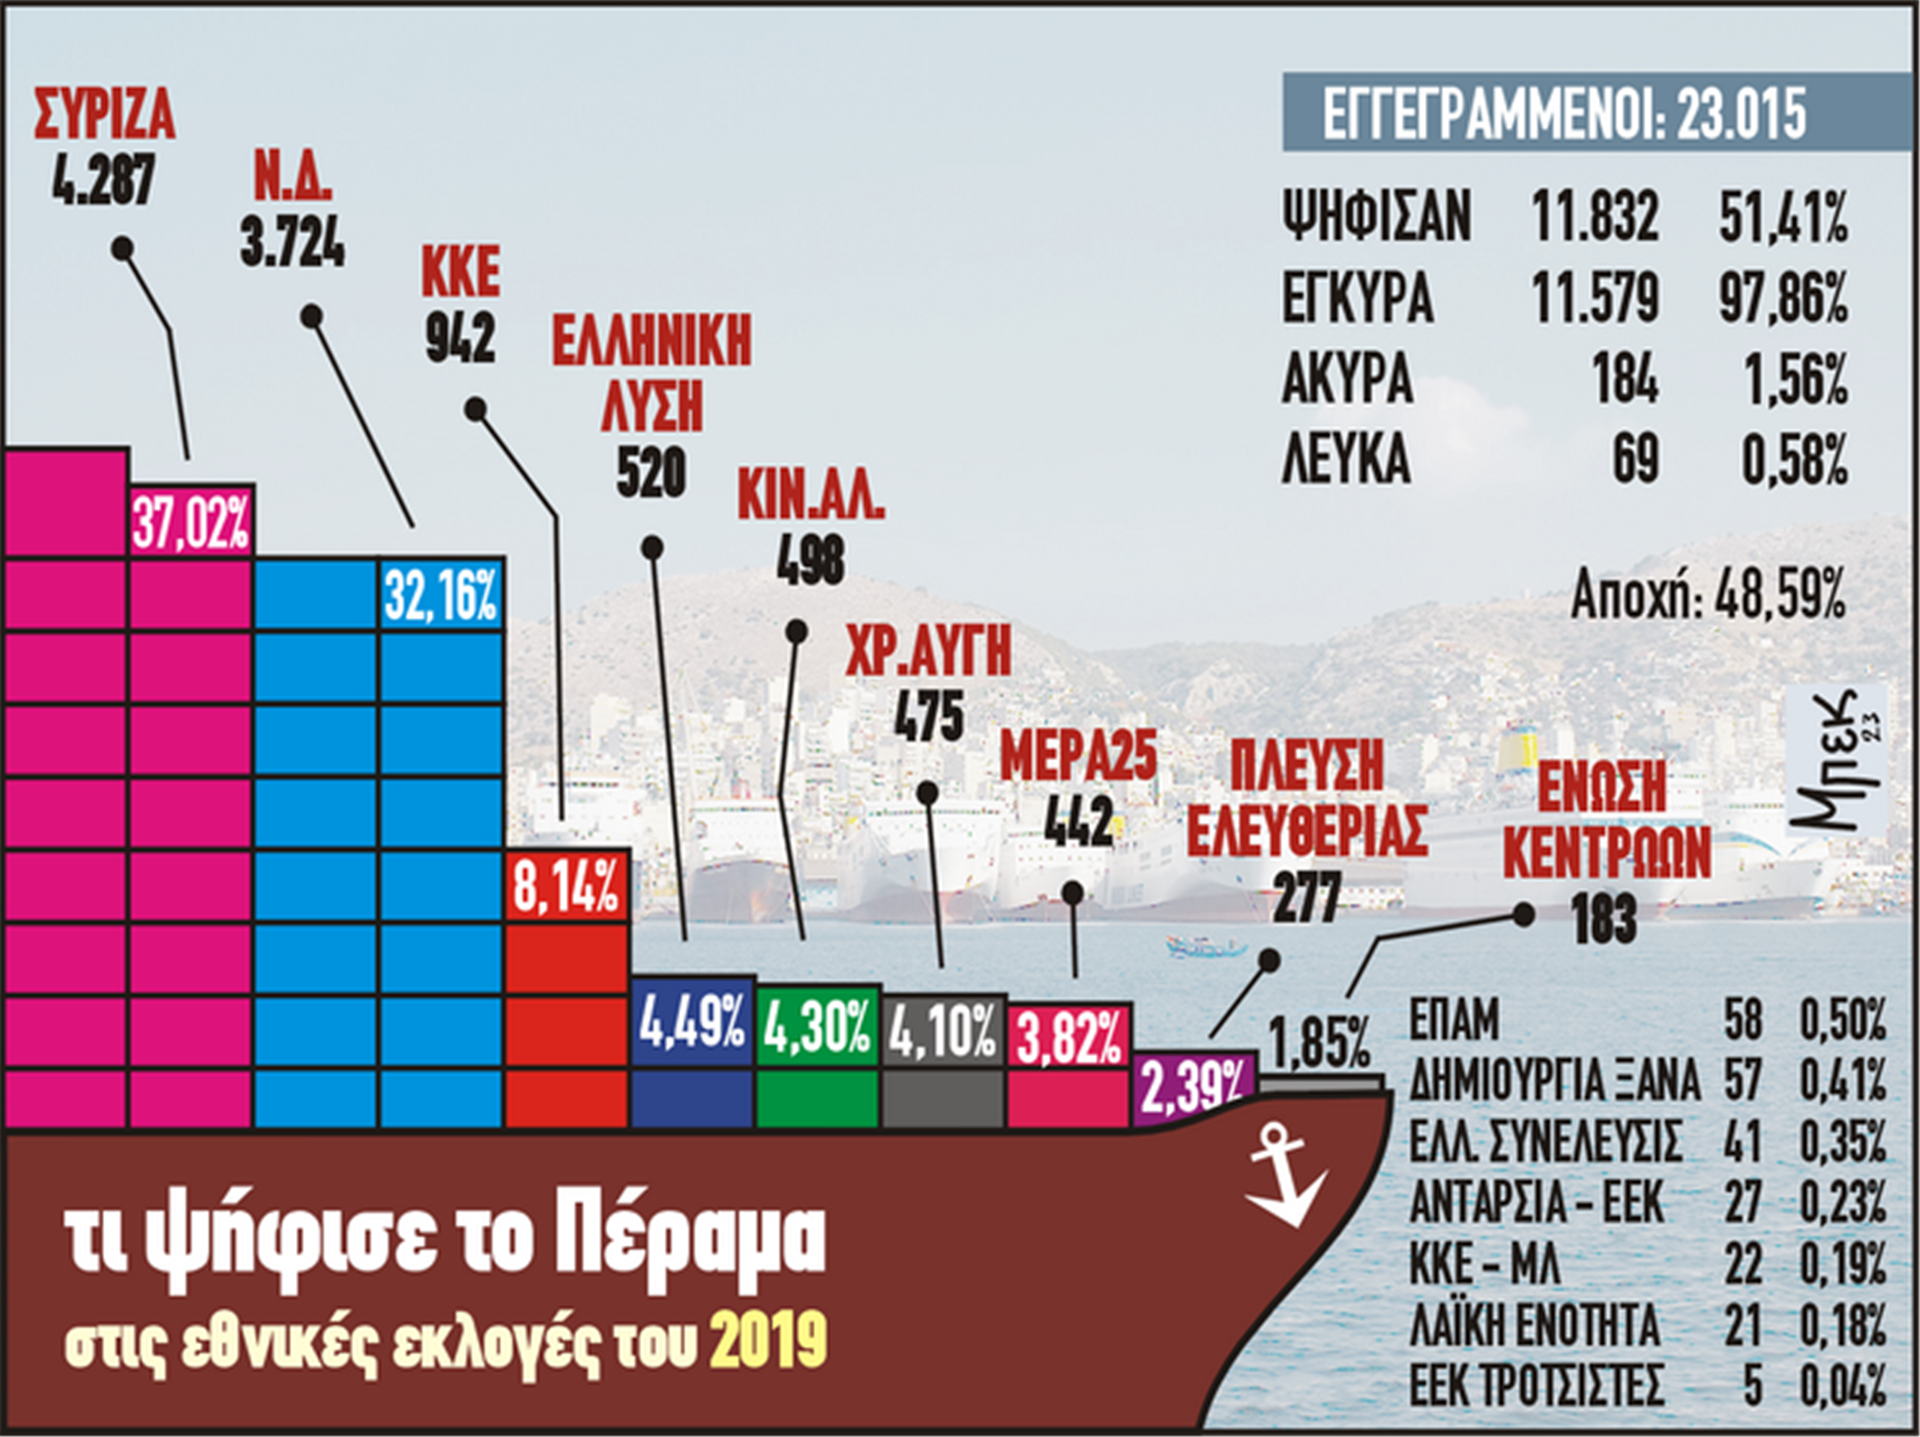 Τι ψήφισε το Πέραμα στις εθνικές εκλογές του 2019